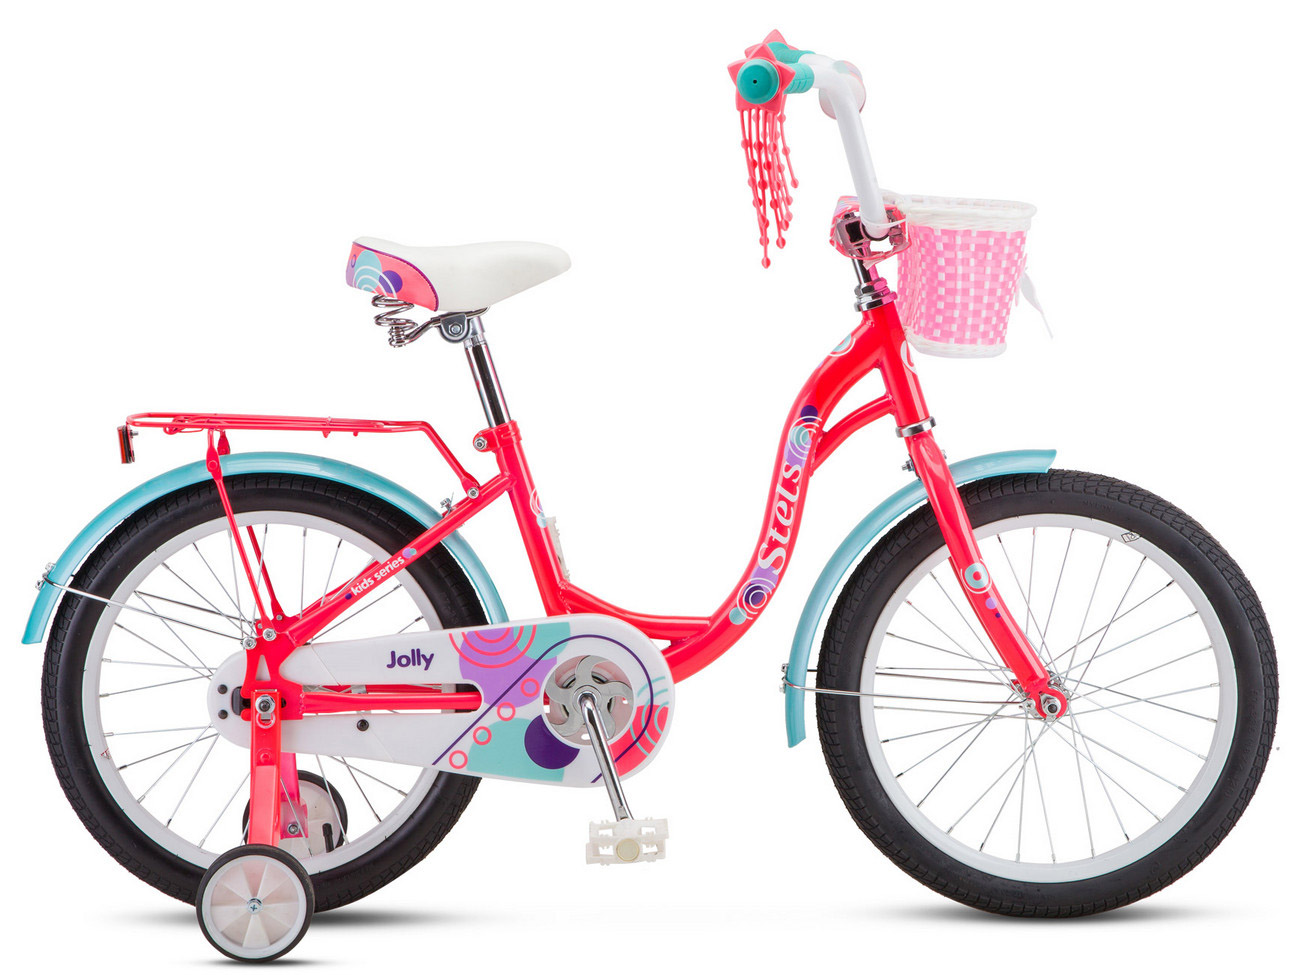  Отзывы о Детском велосипеде Stels Jolly 18 V010 2019